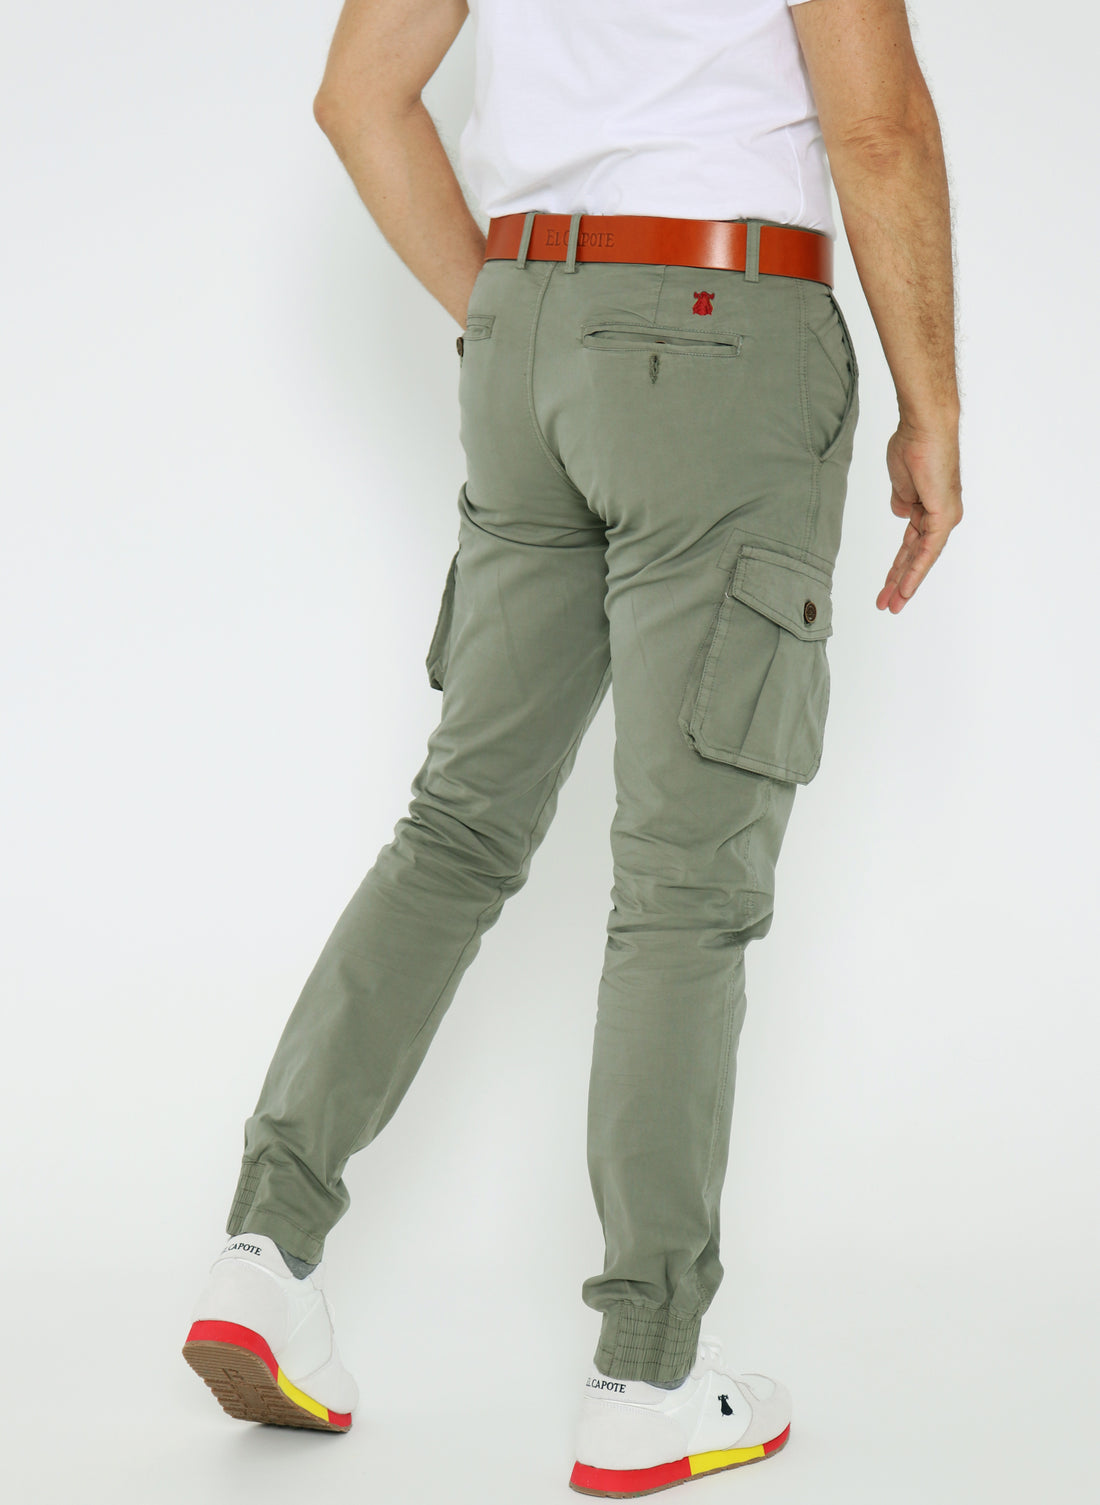 Green Legion cargo pants for men